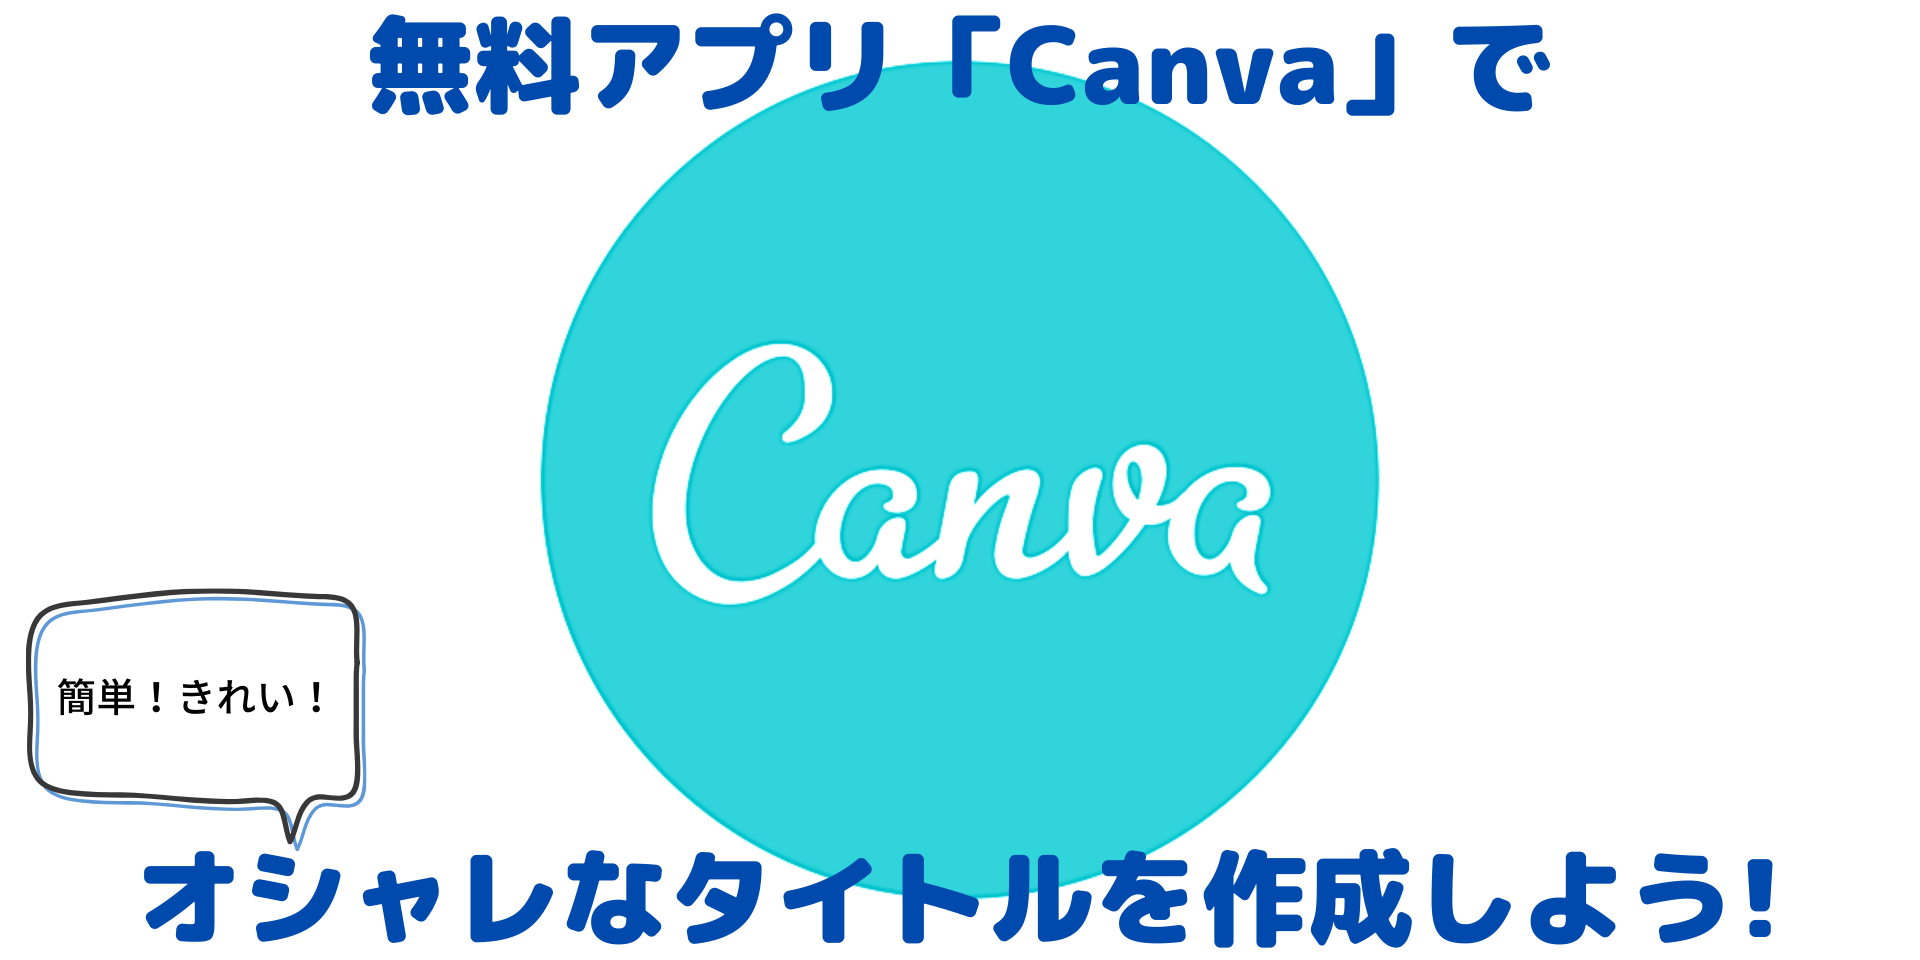 無料アプリ Canva でオシャレなタイトルを作成する方法を紹介 Saga Log